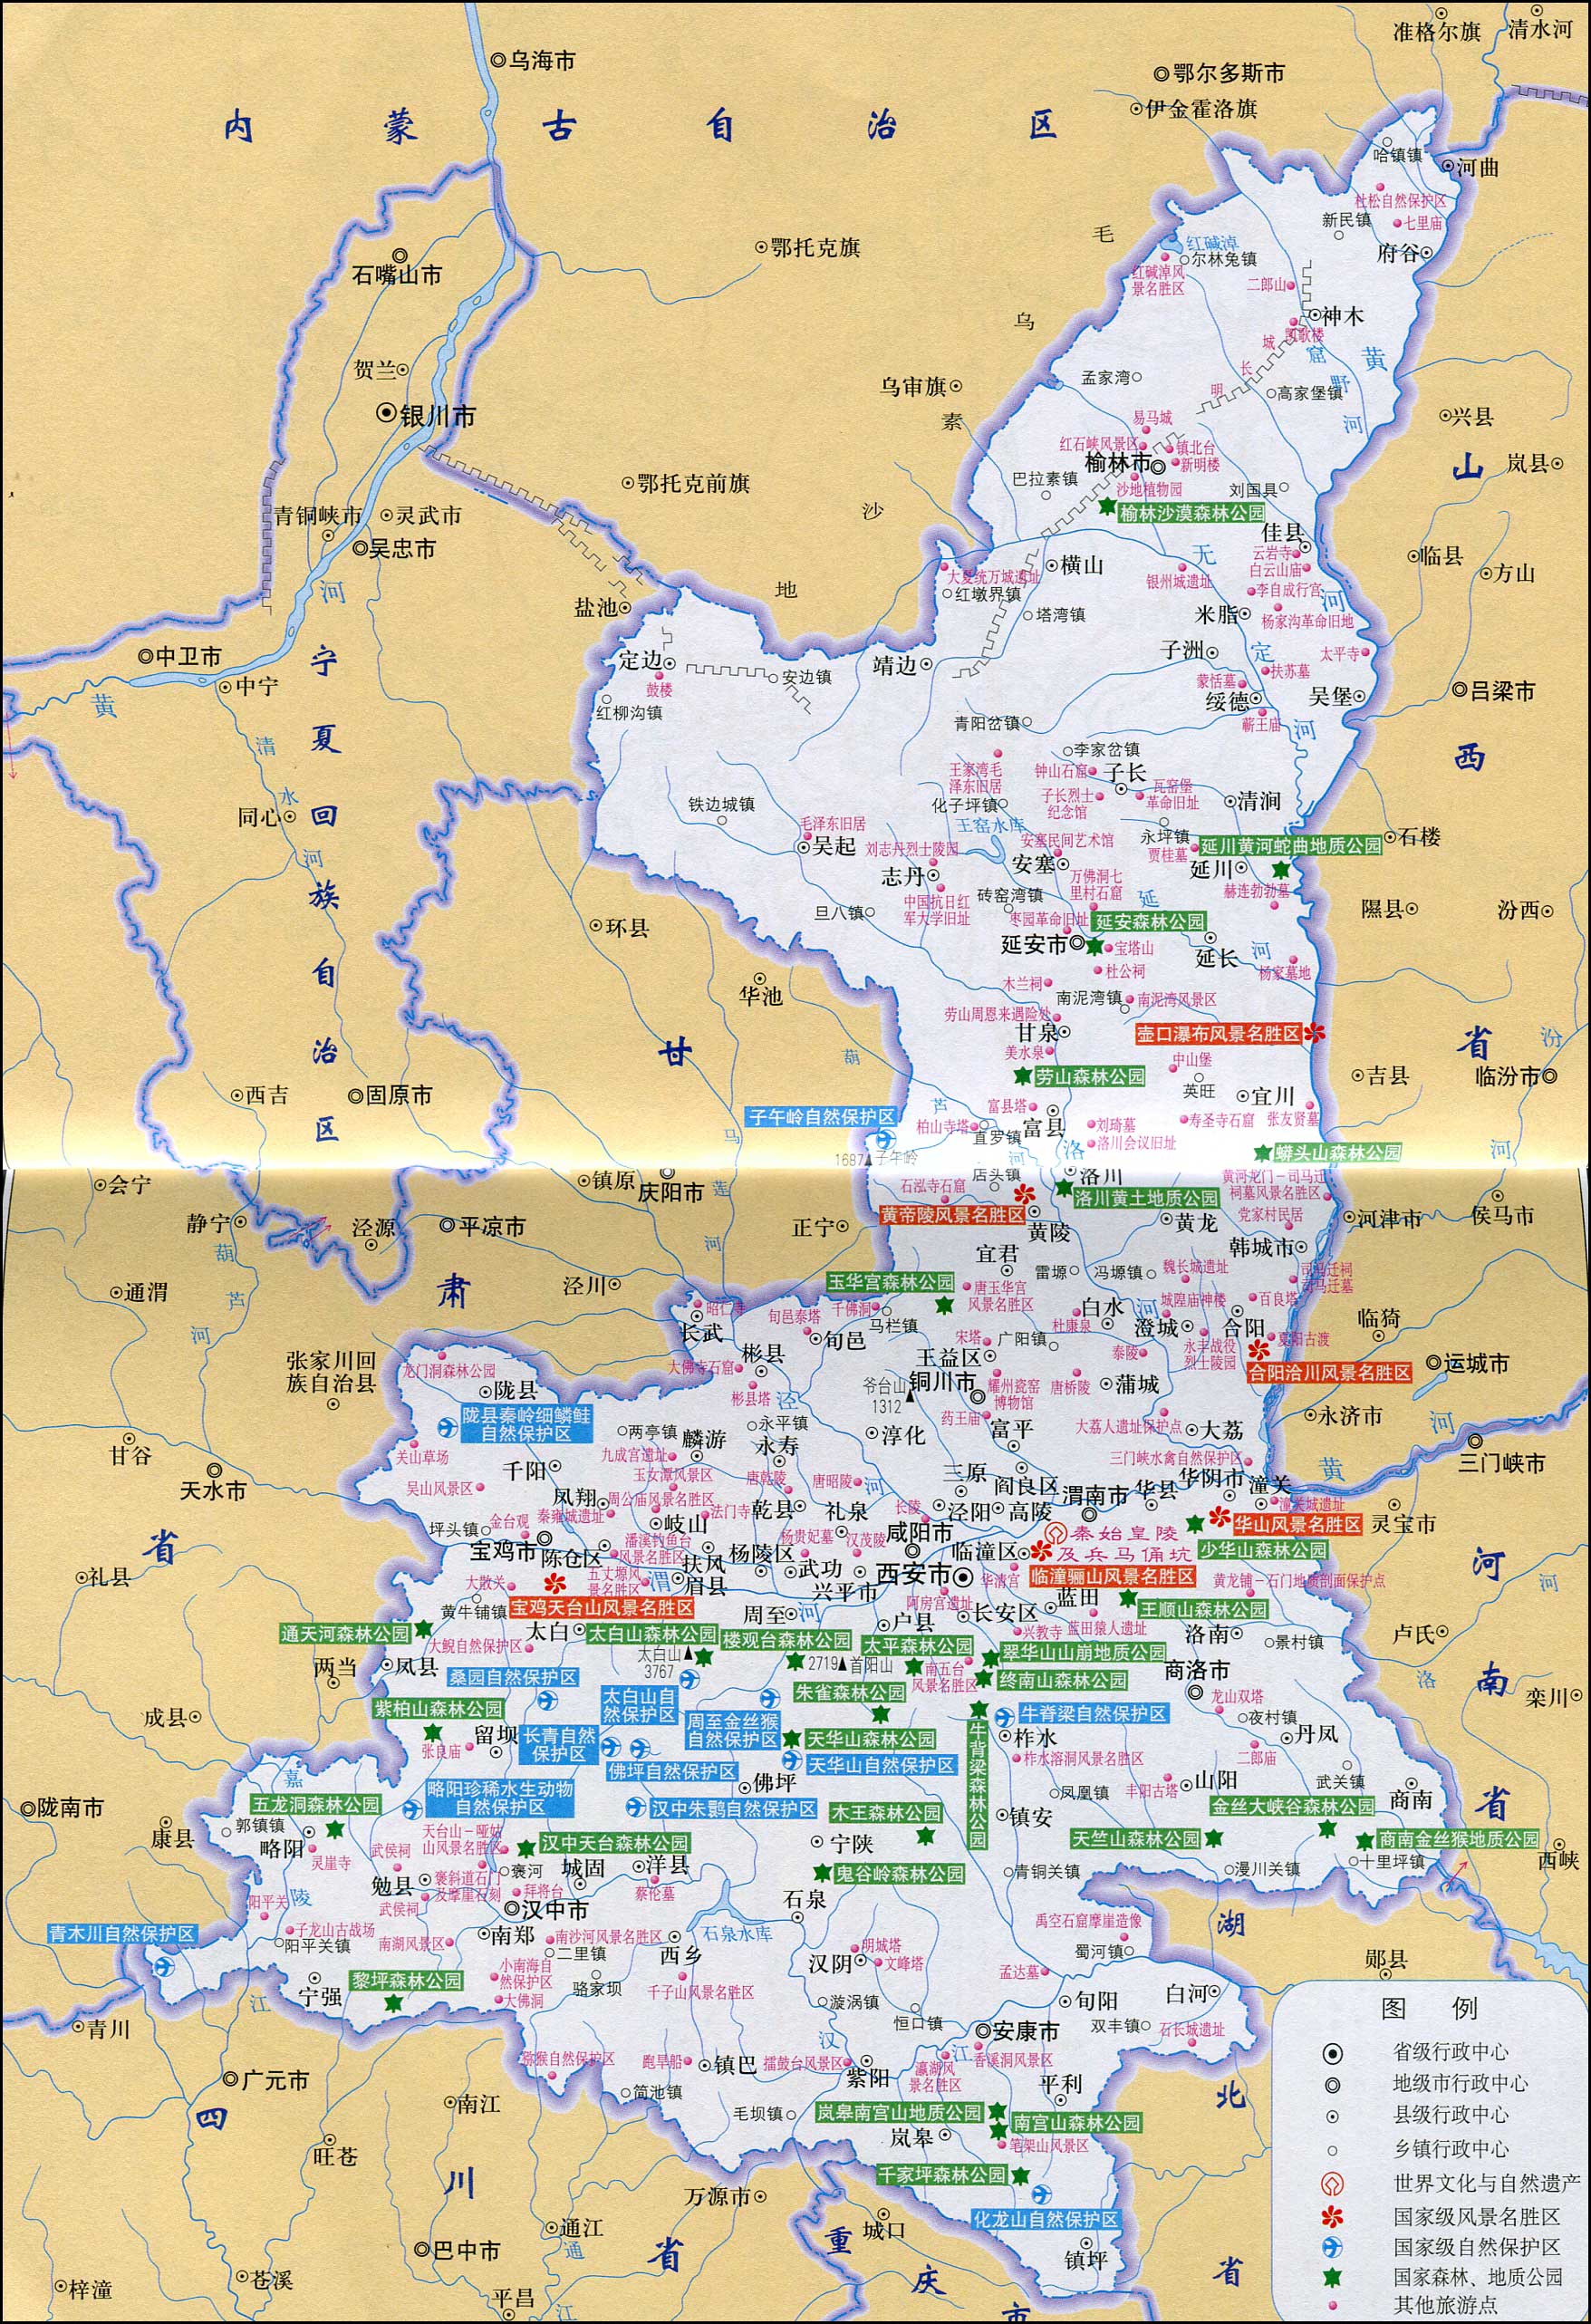 陕西地图(旅游图)图片